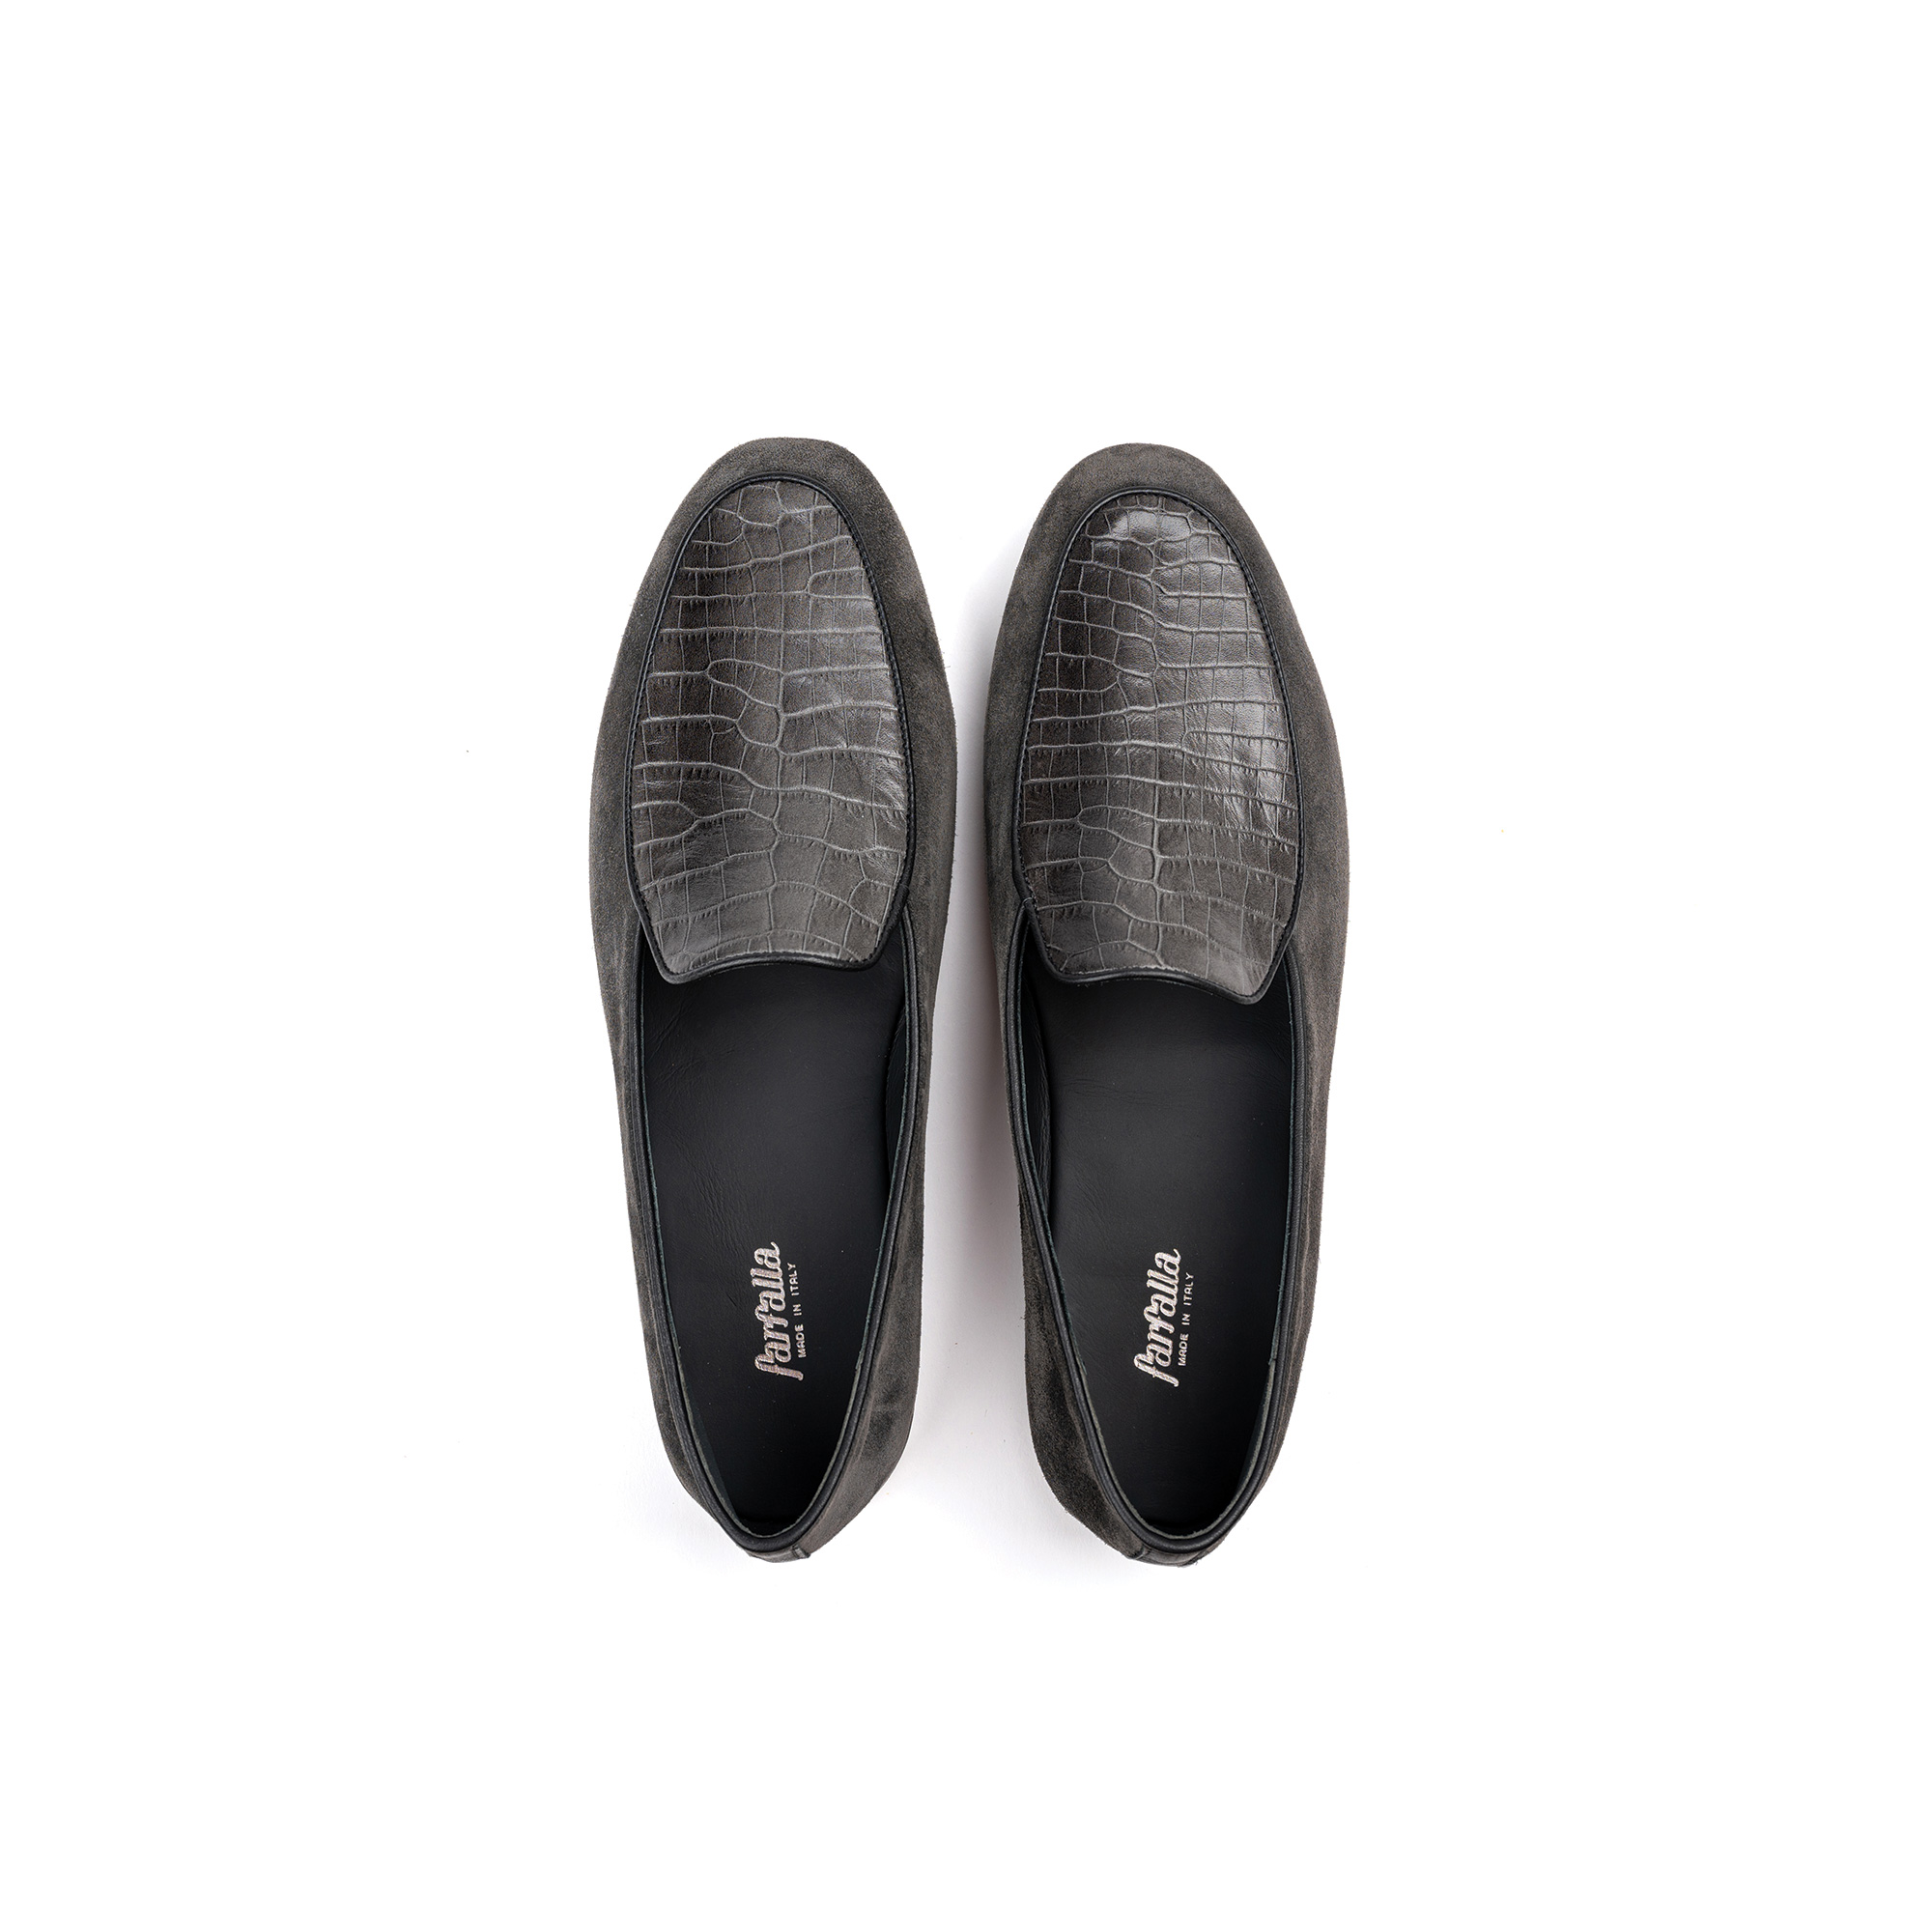 Luxury indoor slipper in gray velour - Farfalla italian slippers